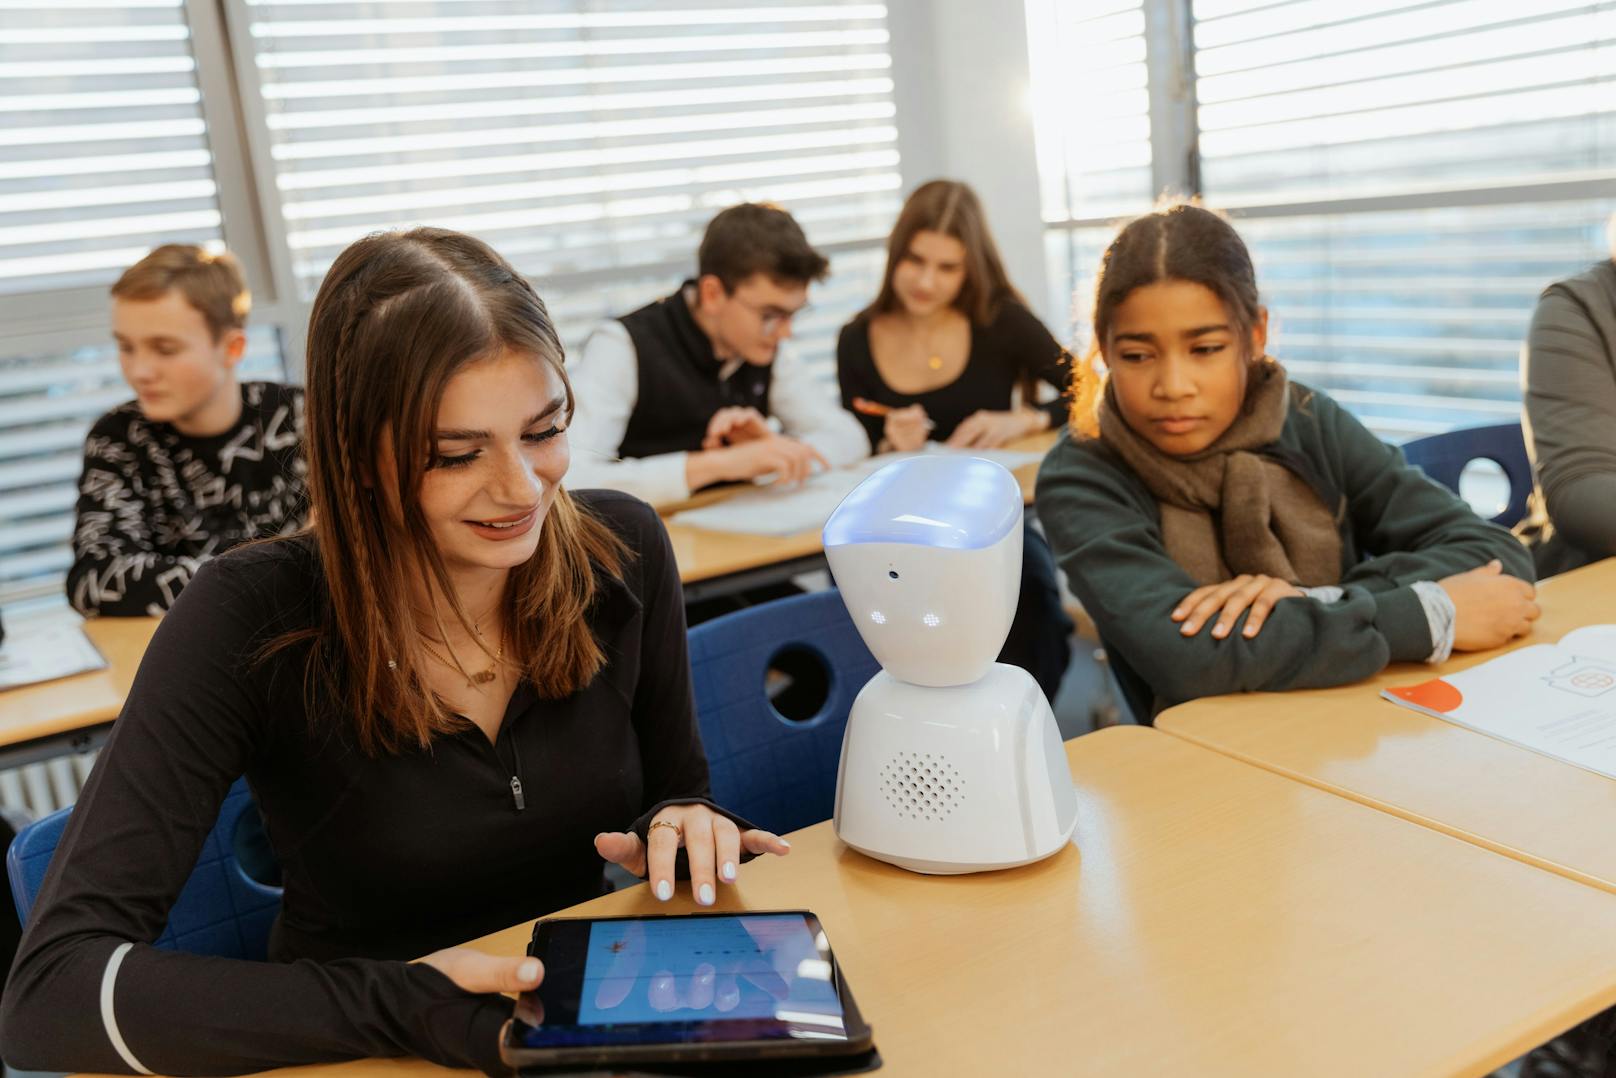 Der Roboter wird im Klassenzimmer am Tisch platziert, während sich der Teilnehmer von zu Hause oder dem Krankenbett aus mit dem Tablet oder Smartphone verbindet.